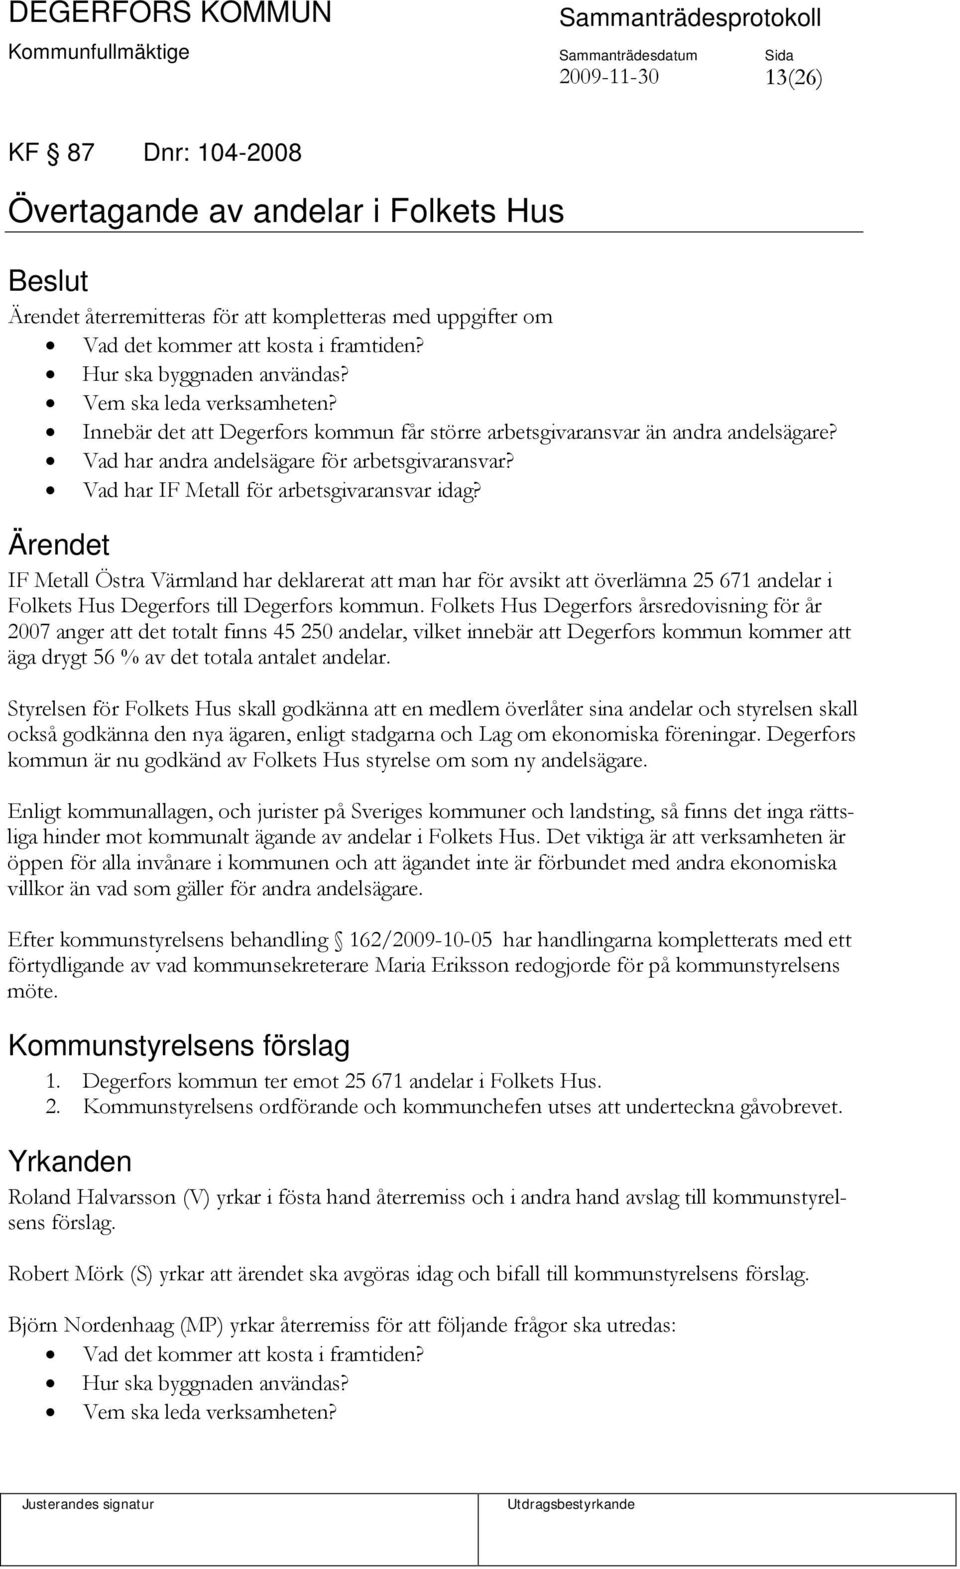 Vad har IF Metall för arbetsgivaransvar idag? IF Metall Östra Värmland har deklarerat att man har för avsikt att överlämna 25 671 andelar i Folkets Hus Degerfors till Degerfors kommun.